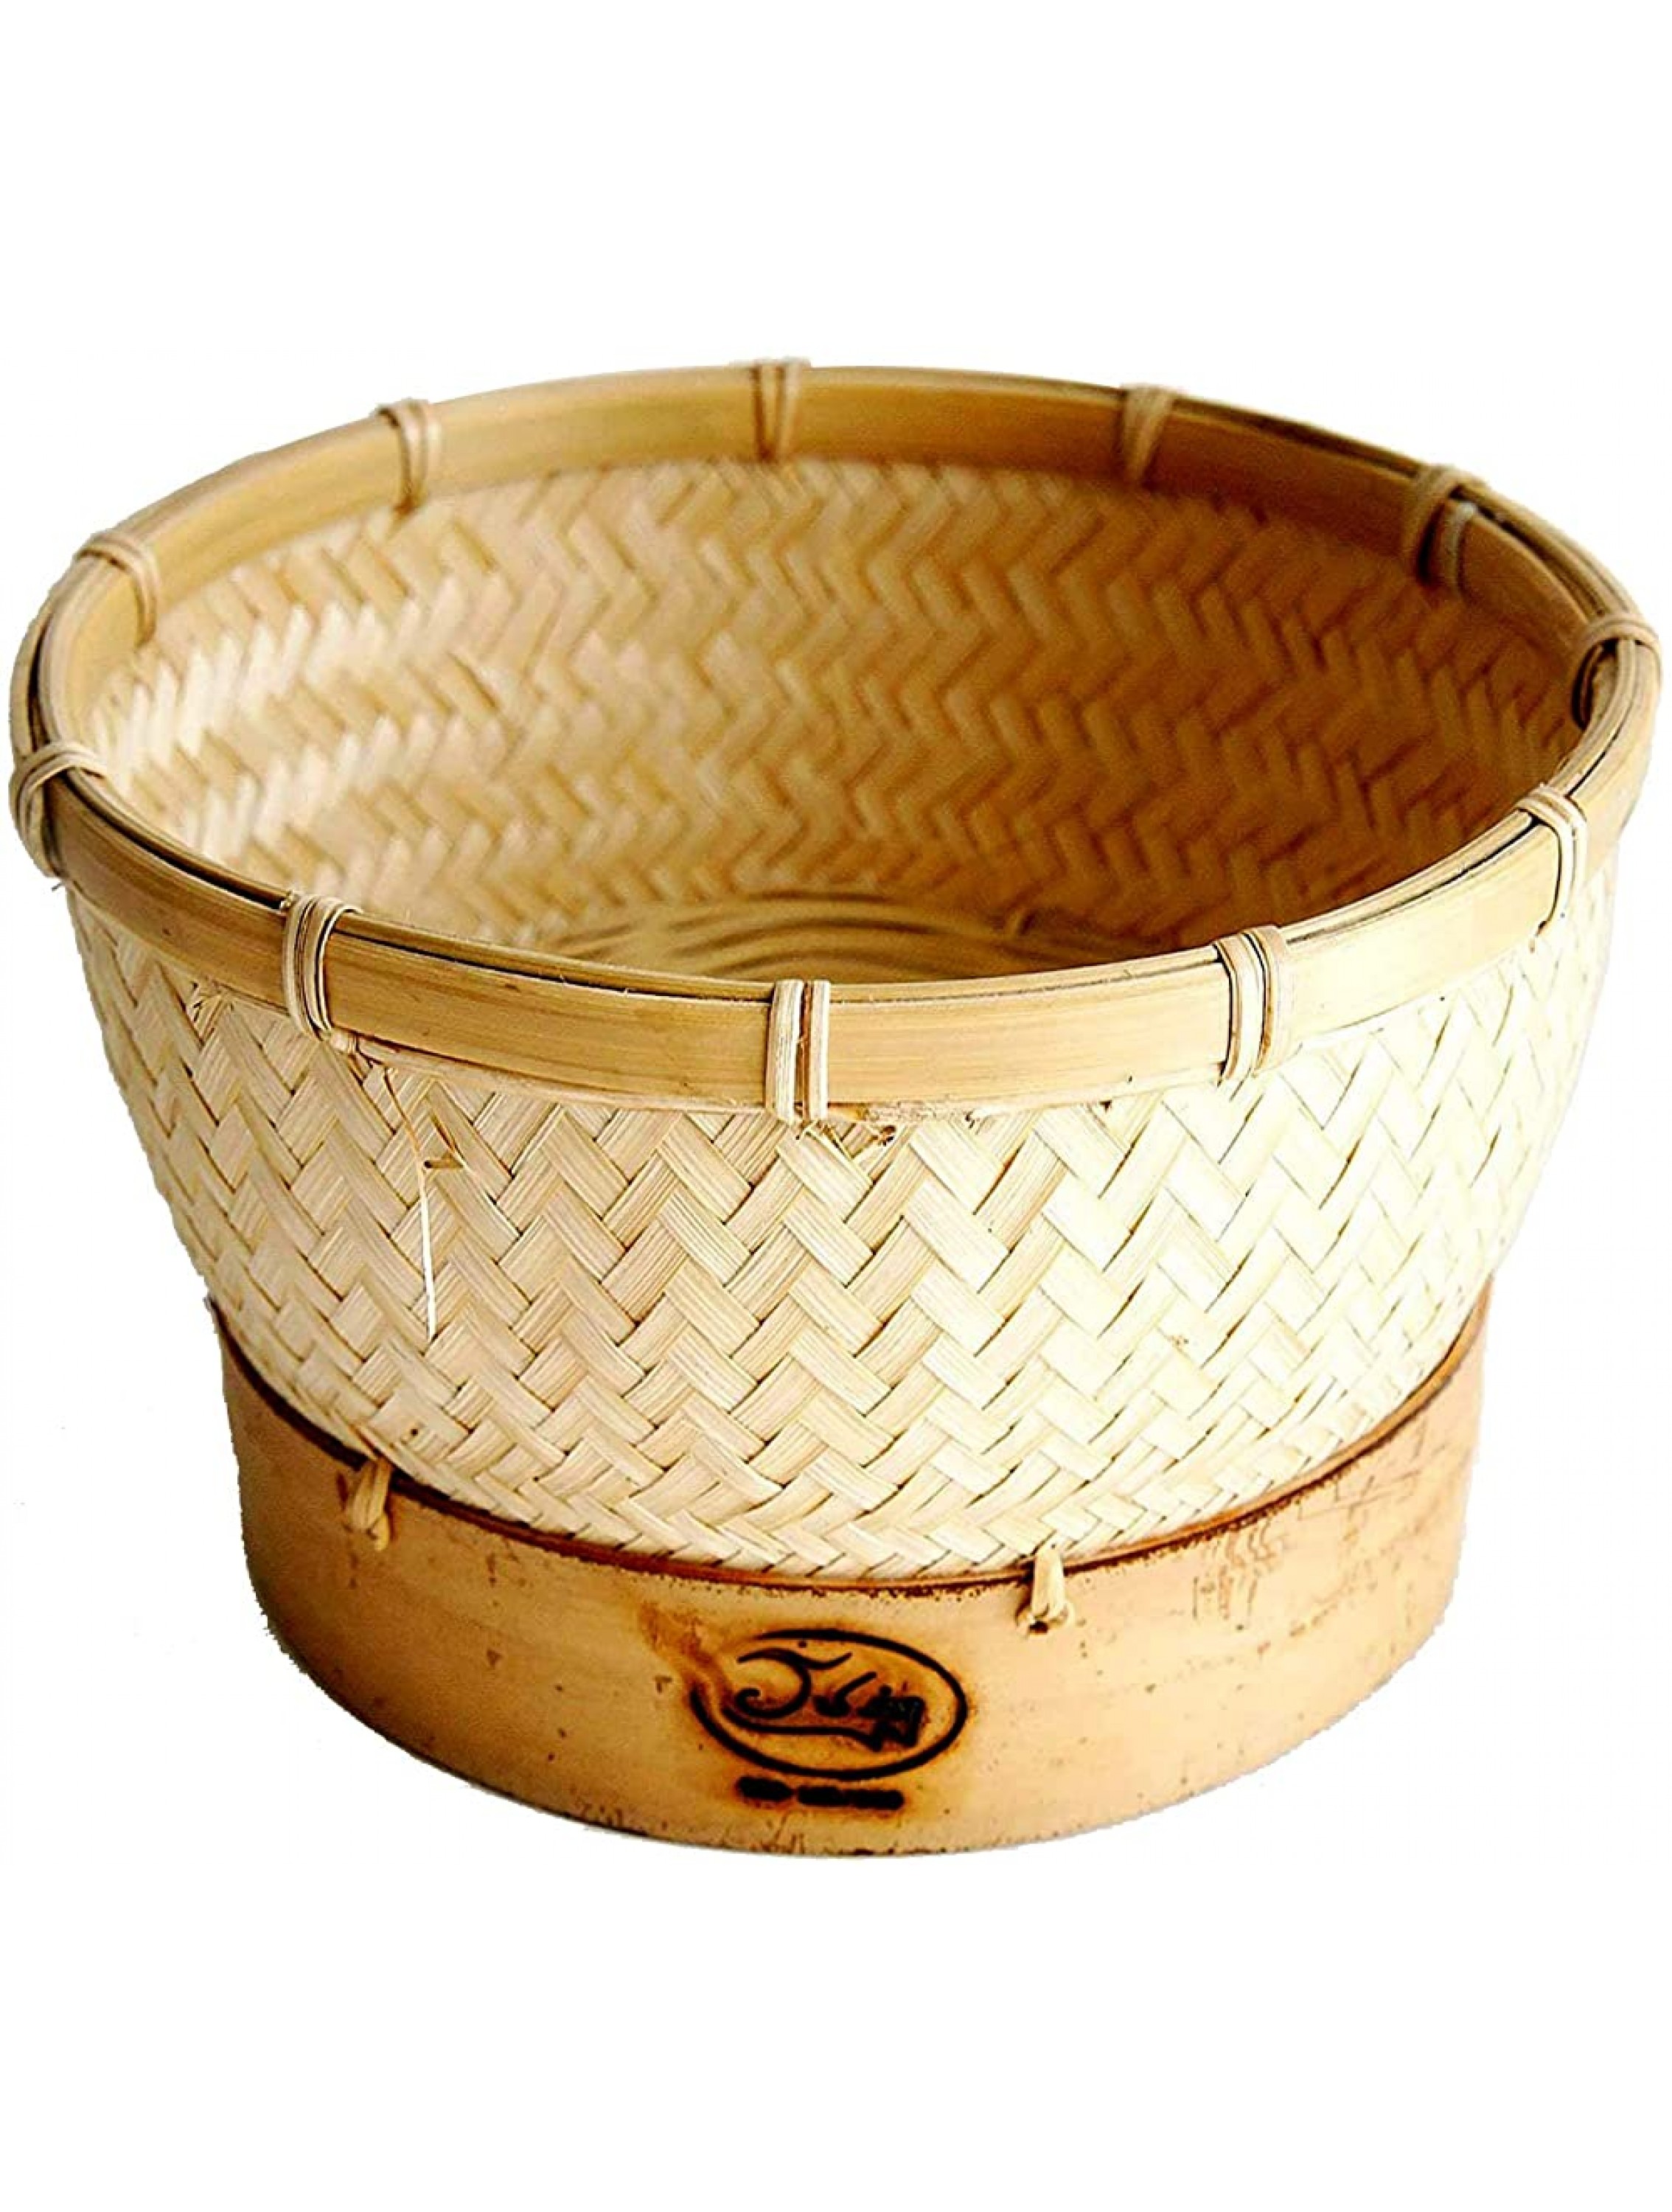 Inner Sticky Rice Steamer Cooking Bamboo Basket for Insert in Rice Cooker Basket Diameter 7. - BKSFORBWO